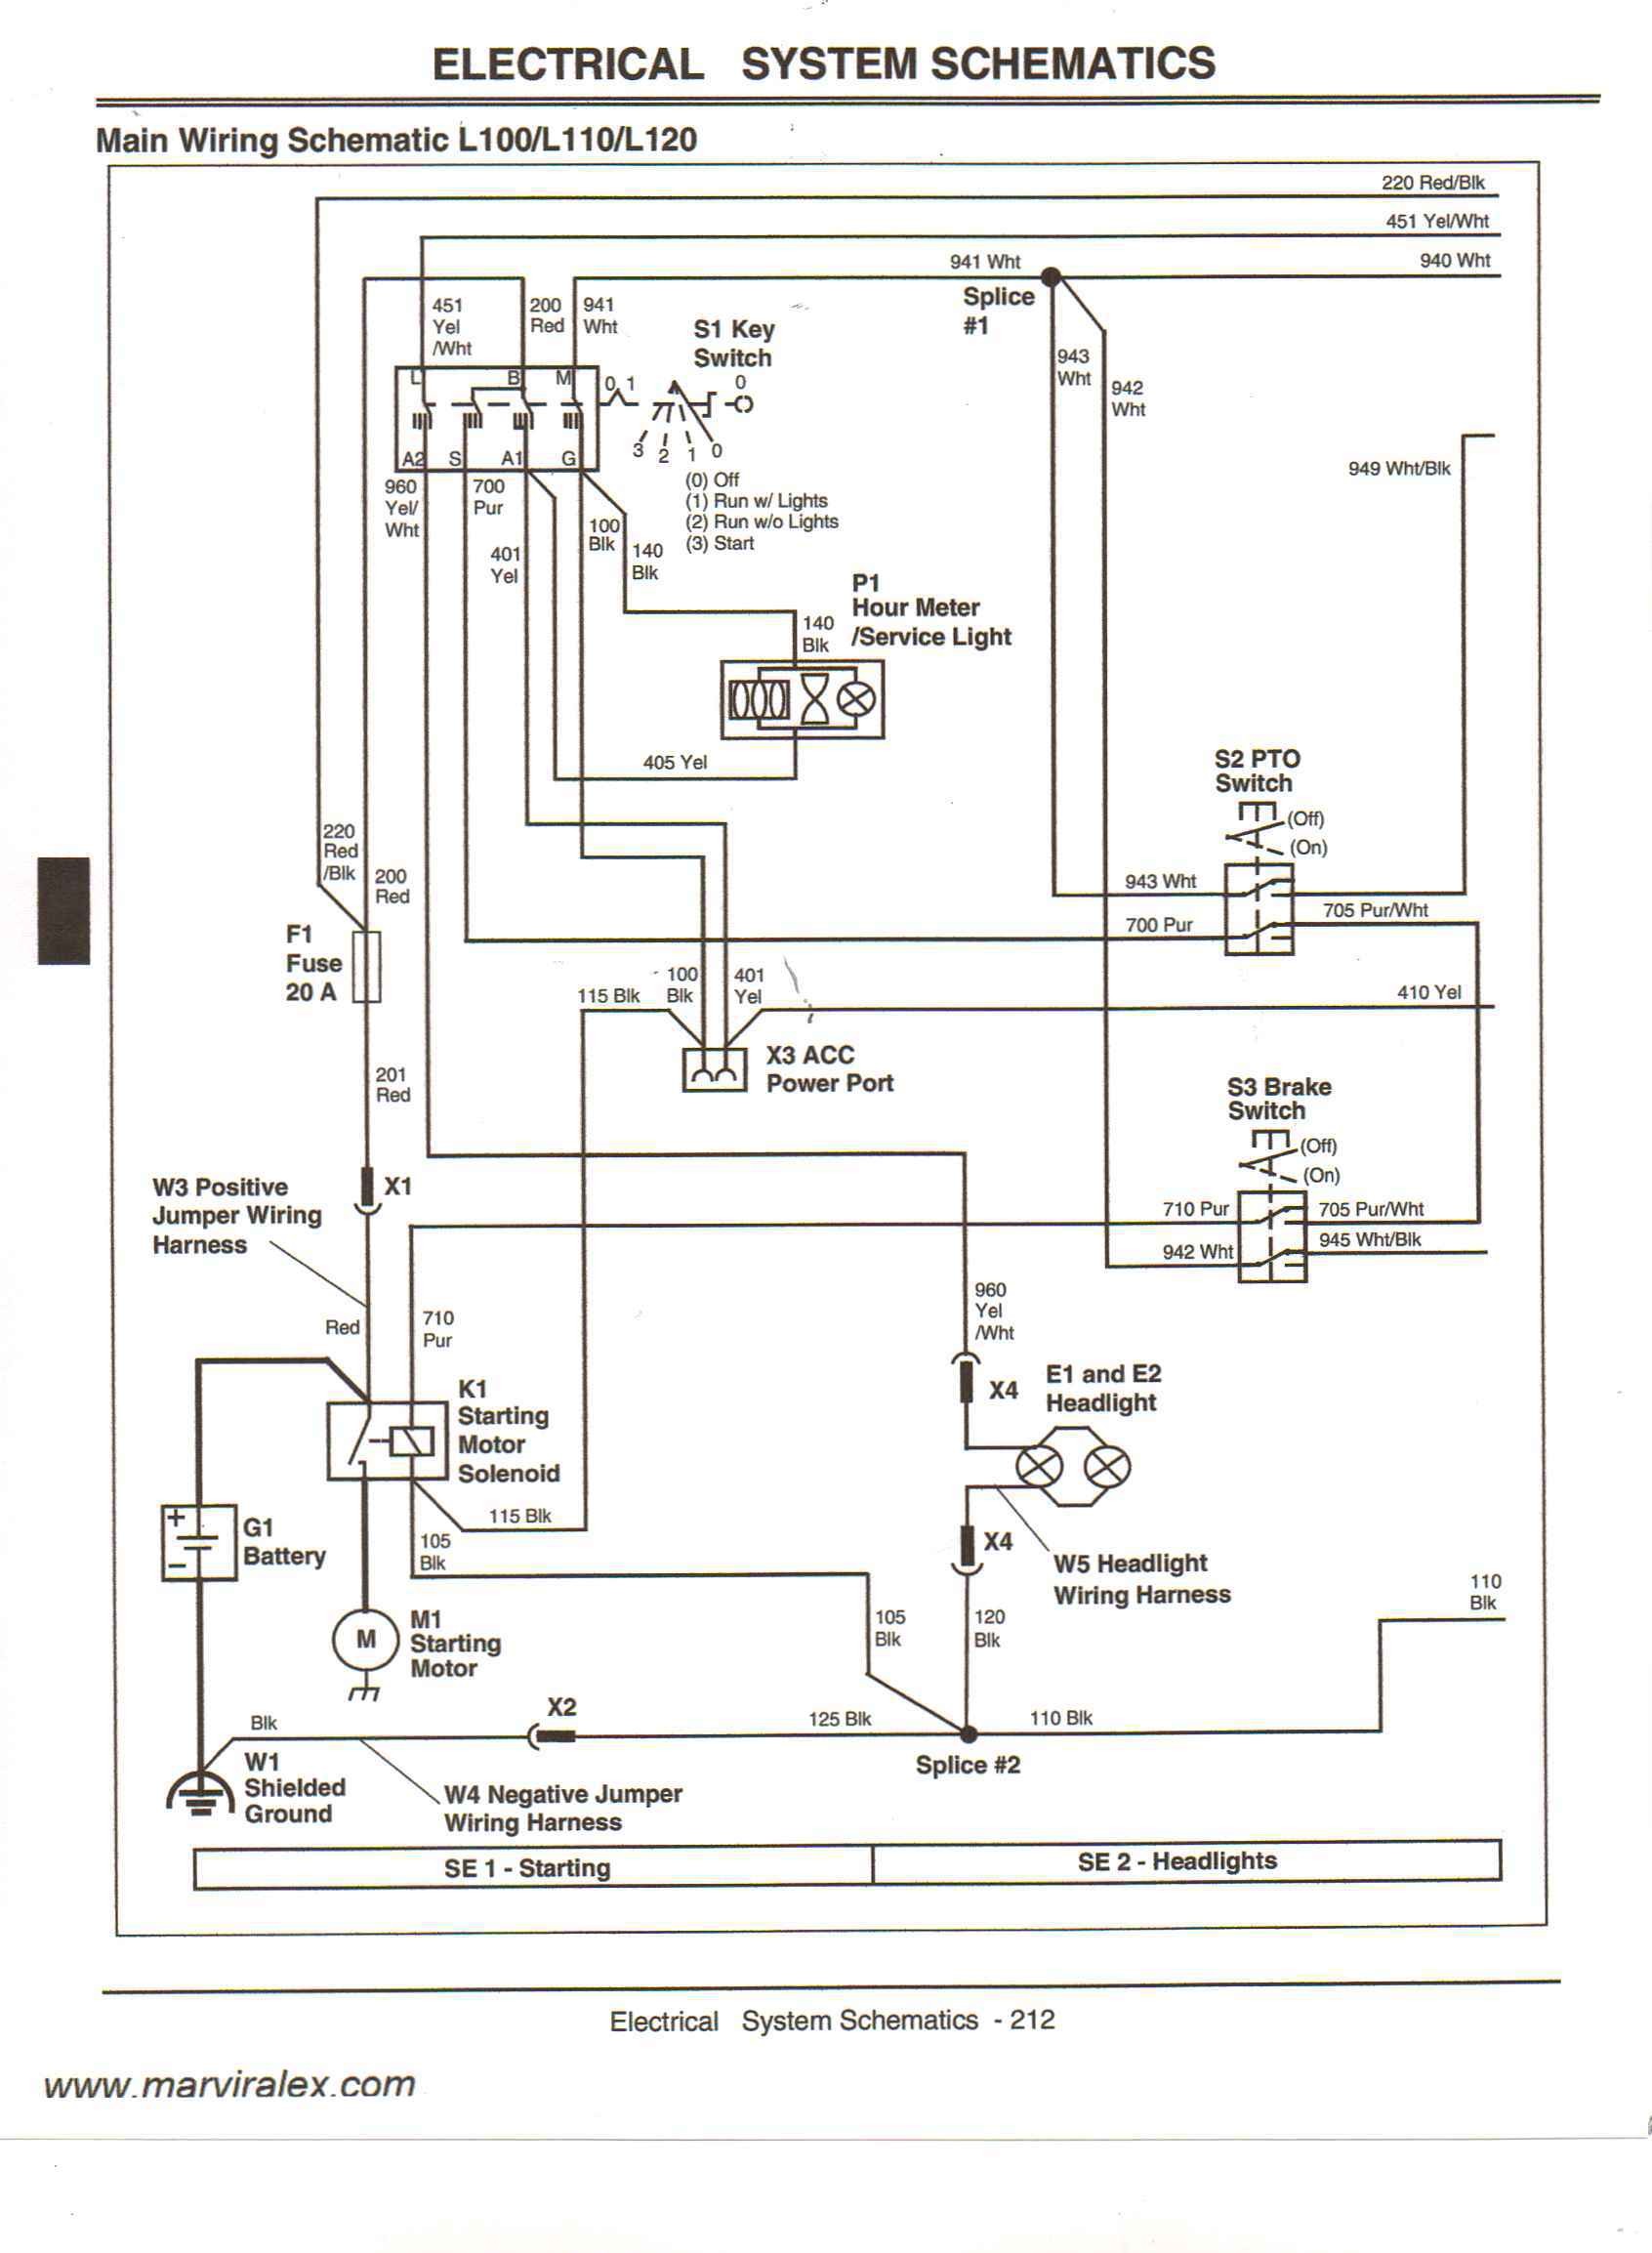 wiring diagram john deere 140 wire center u2022 rh abetter pw